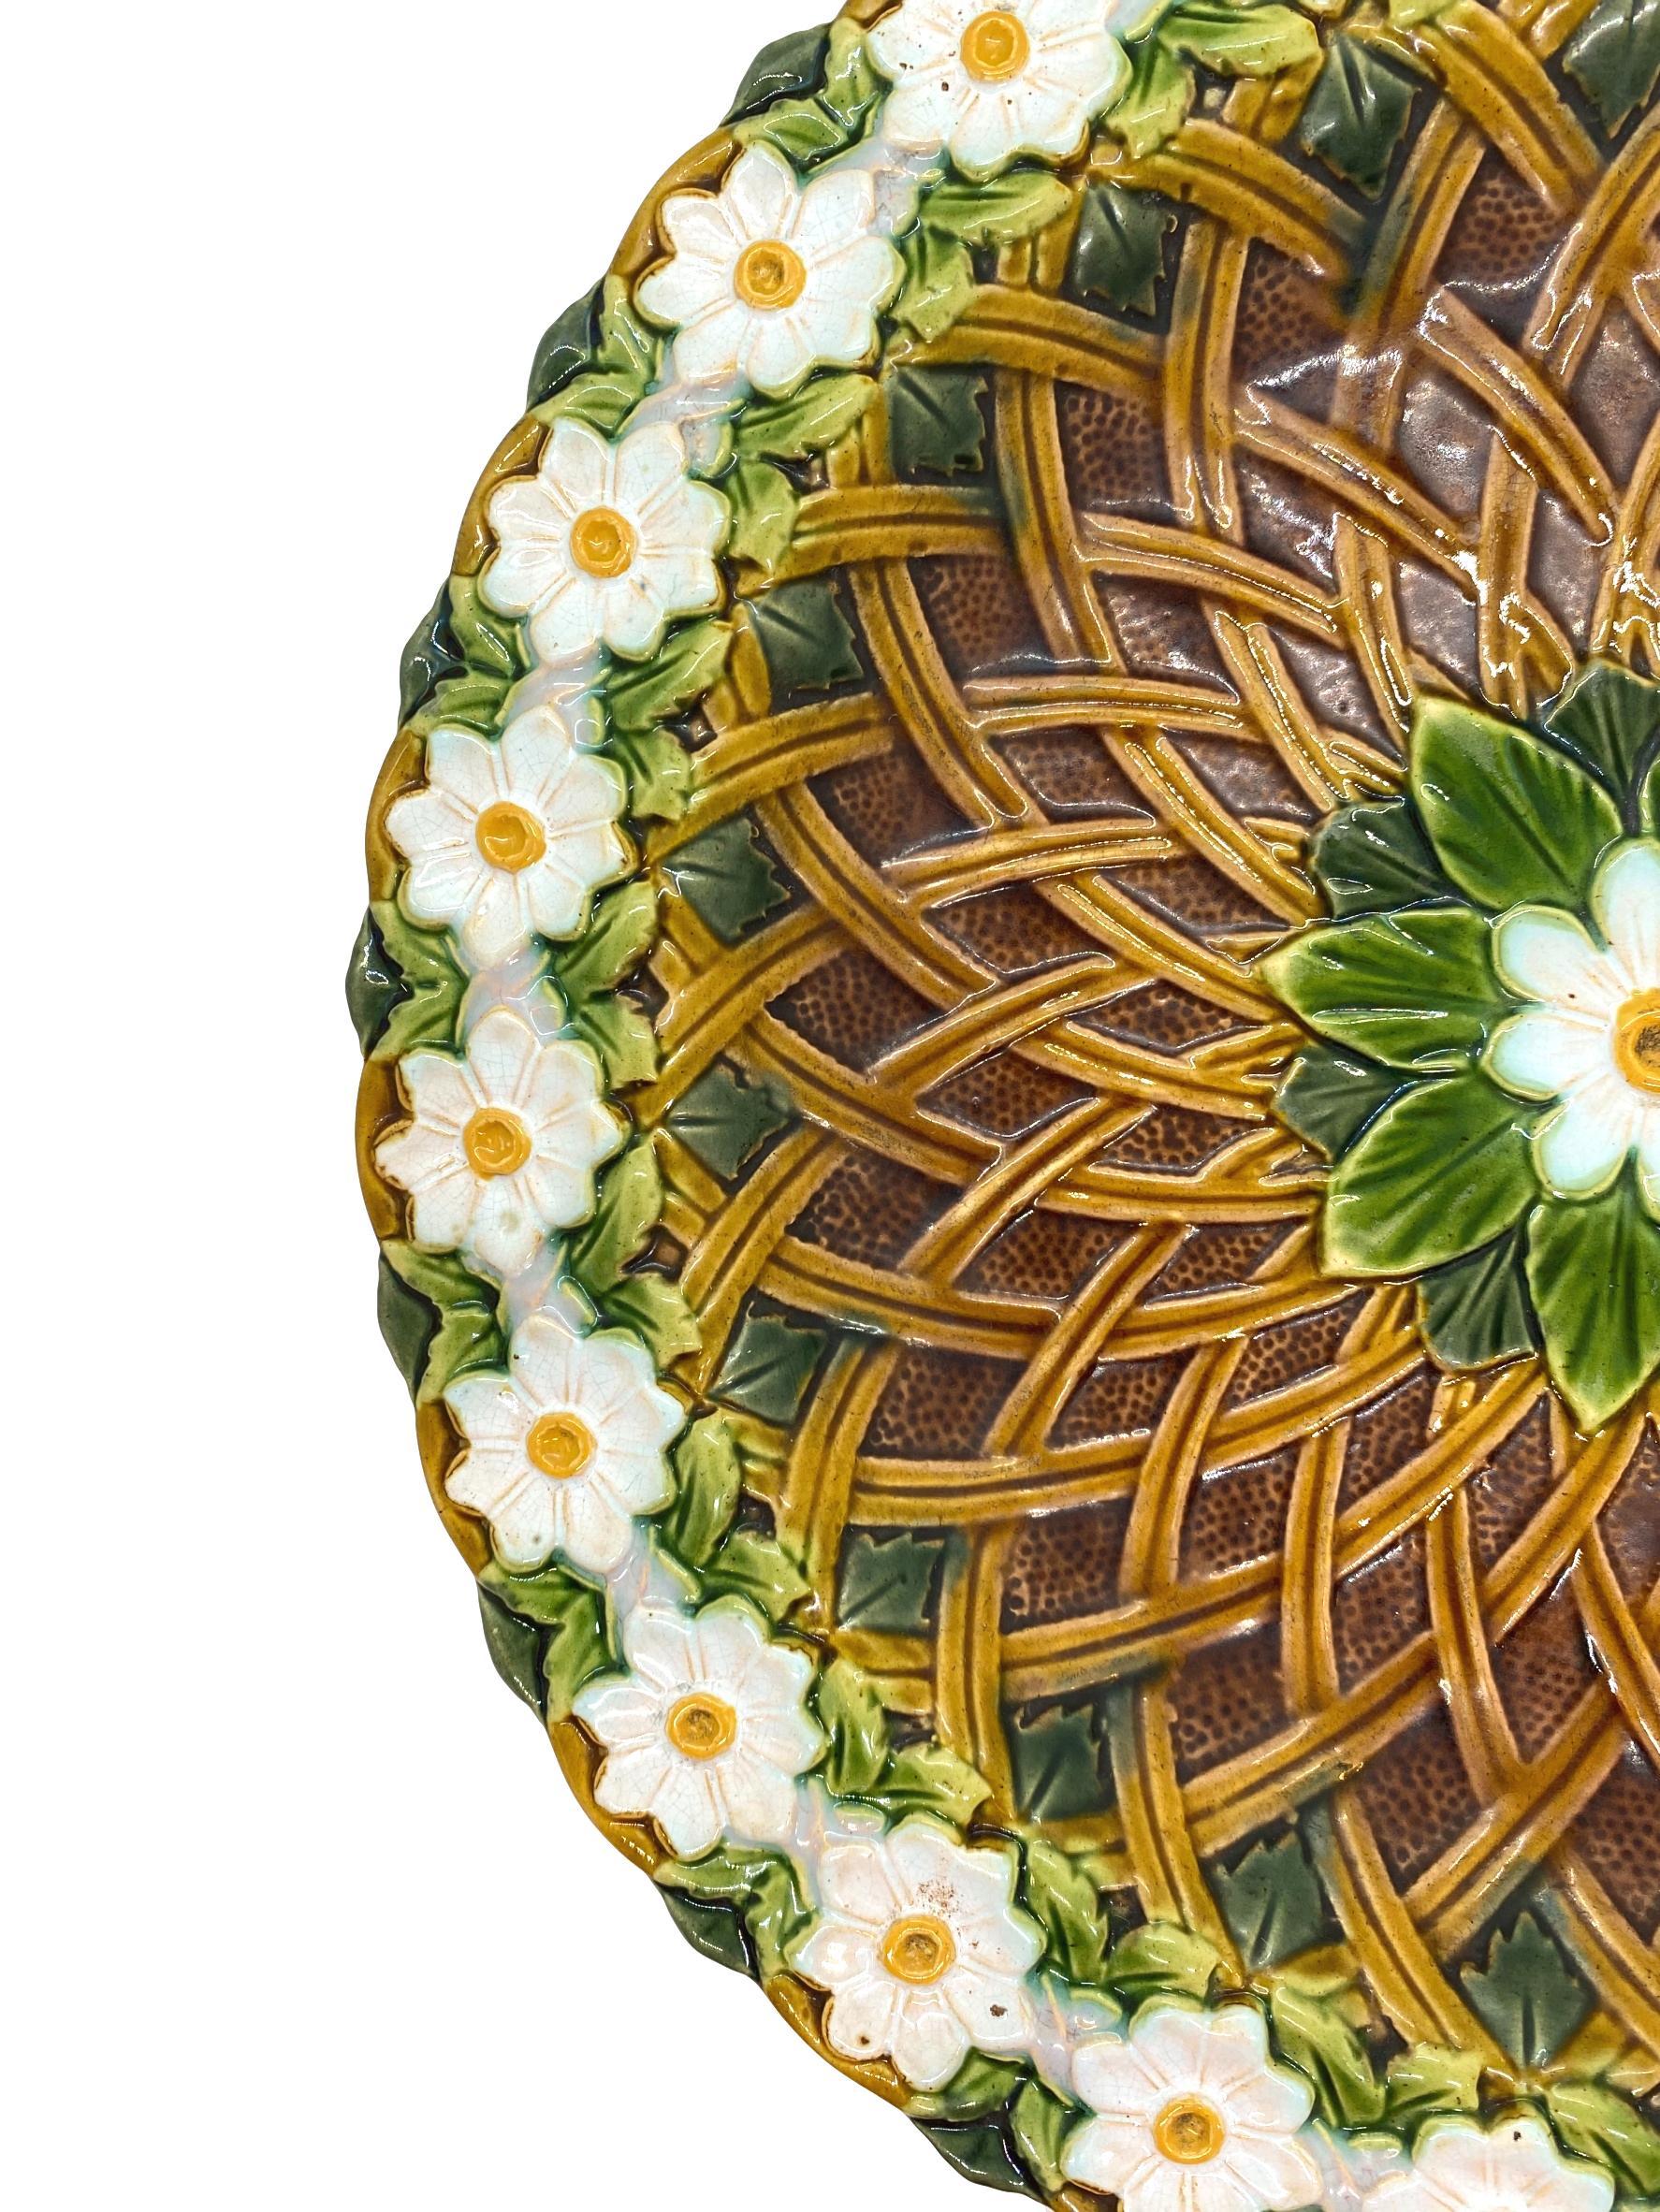 Minton-Majolika-Teller, in Hochrelief geformt mit einem zentralen Medaillon aus Blättern und einem Gänseblümchen, umgeben von einem Korbgeflecht, mit einer fortlaufenden Kette von Gänseblümchen, die den Rand bilden, eingeprägte Marken auf der